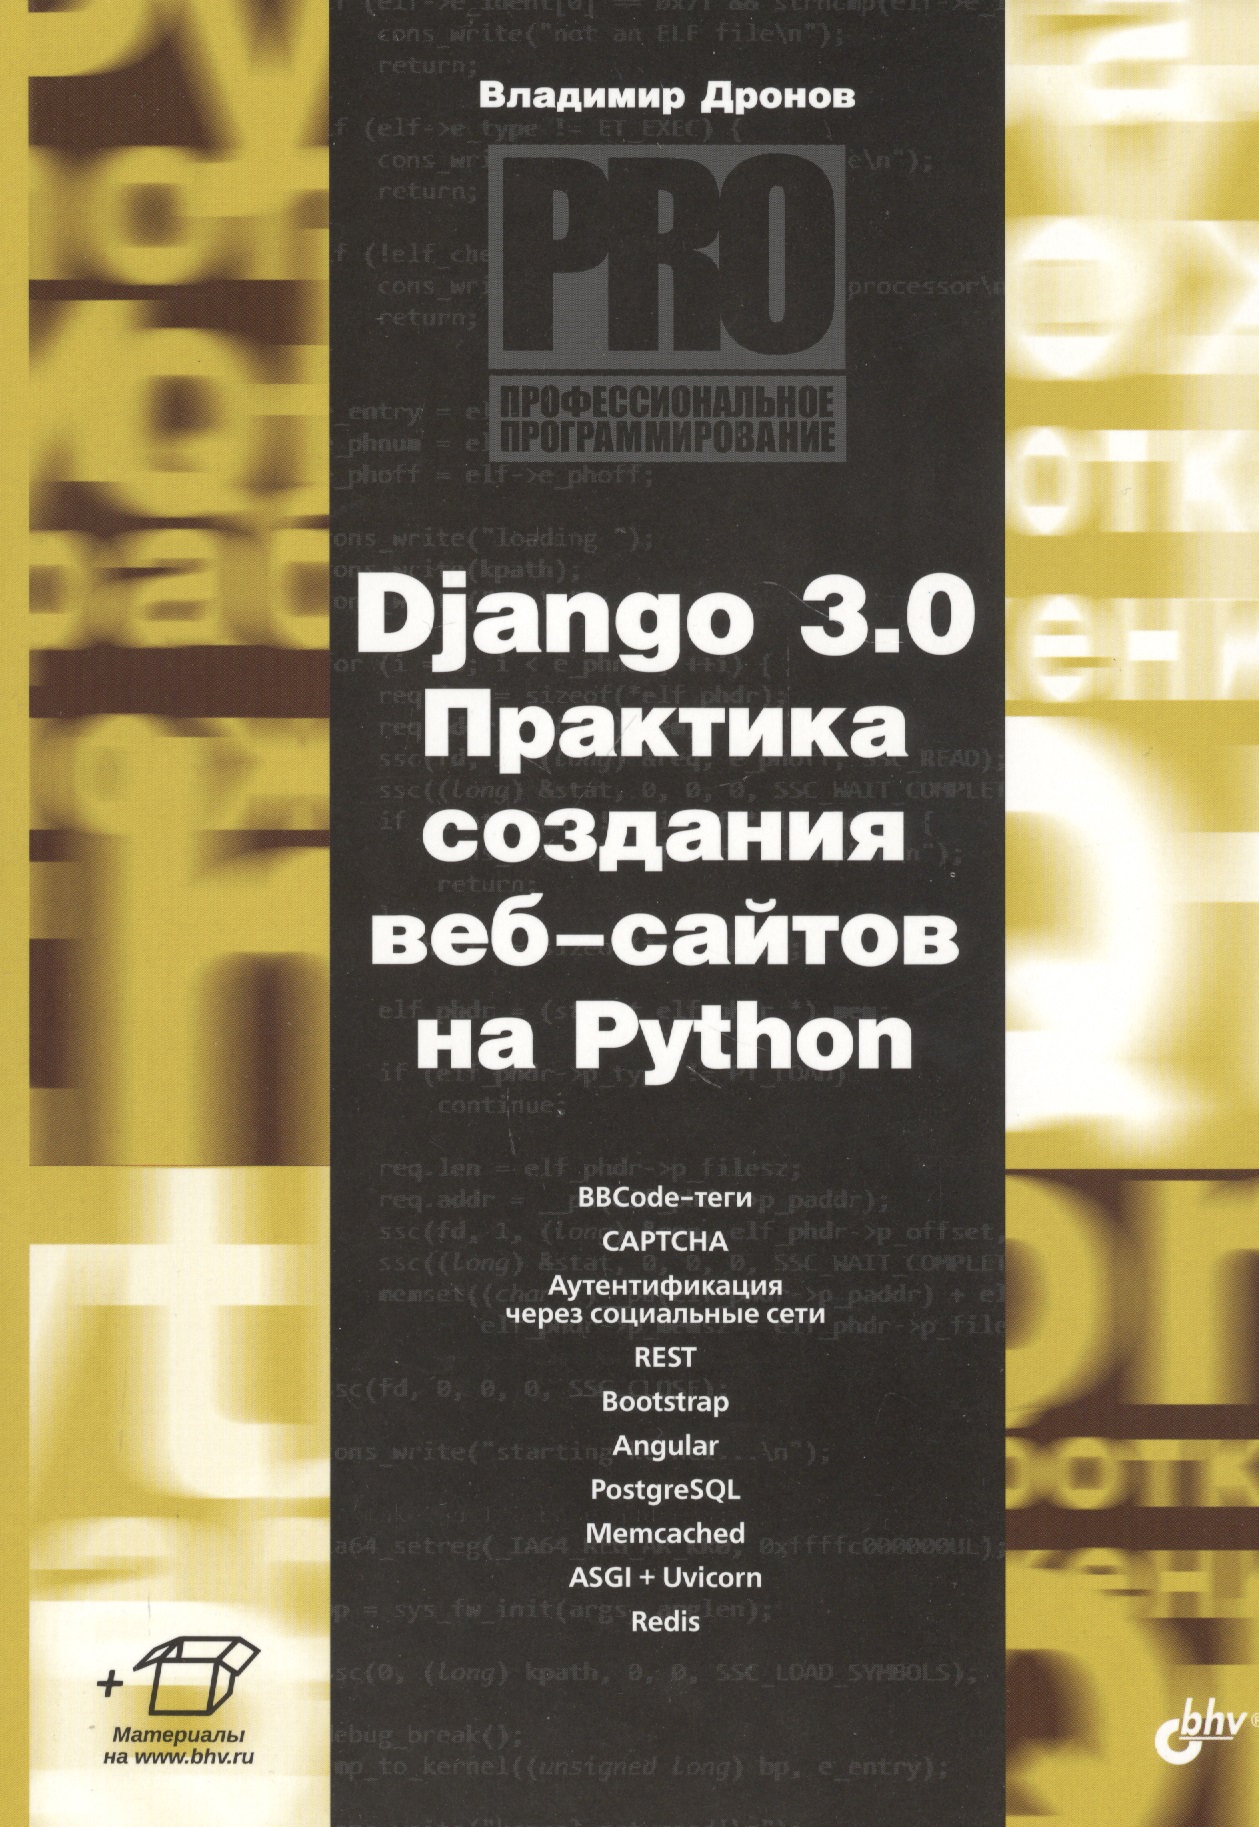 Дронов Владимир Александрович Django 3.0. Практика создания веб-сайтов на Python дронов владимир александрович django 3 0 практика создания веб сайтов на python